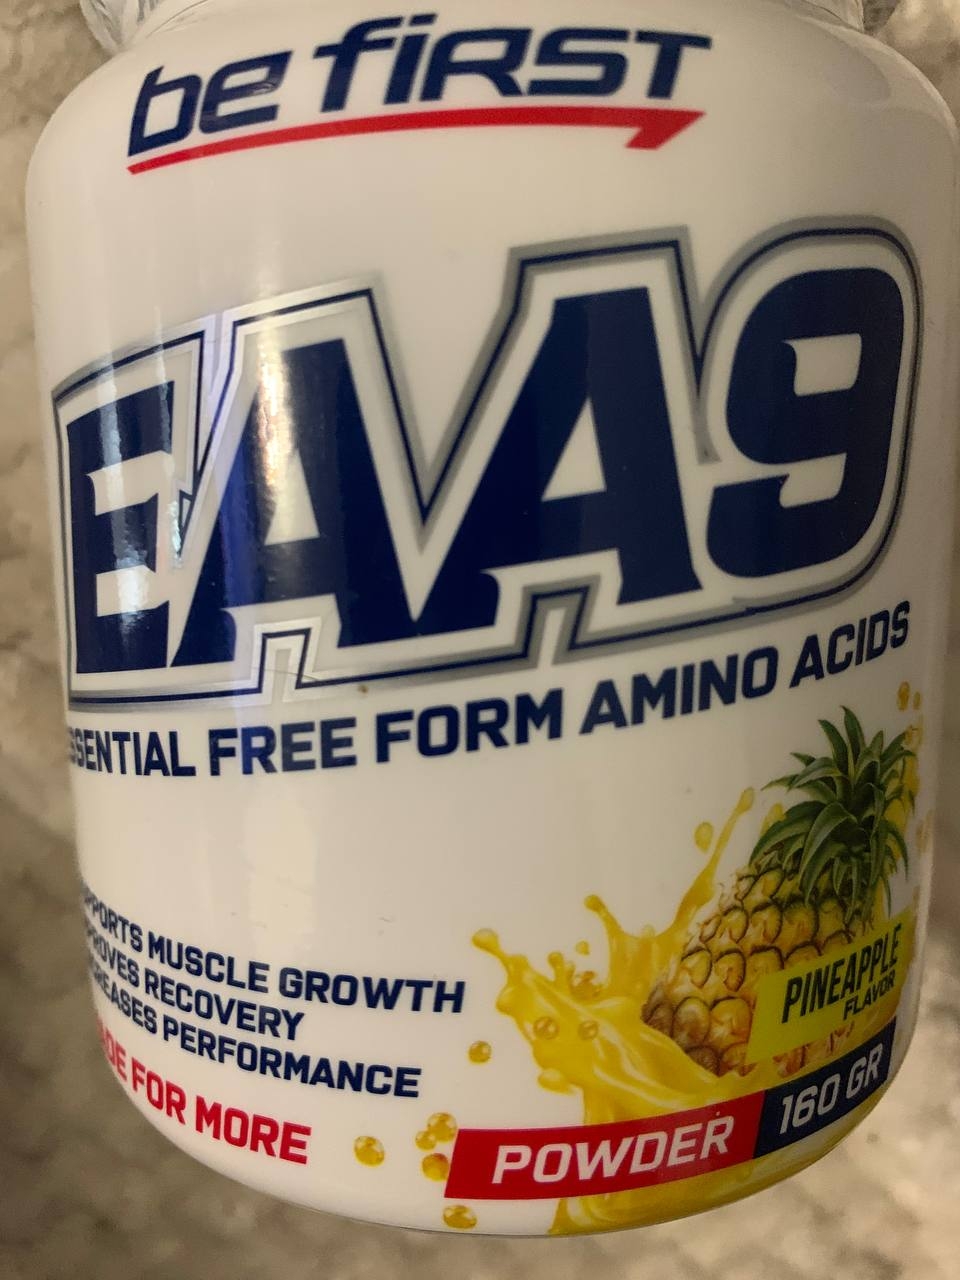 Be First EAA9 powder (незаменимые аминокислоты)160 гр - Стоит только взглянуть на состав